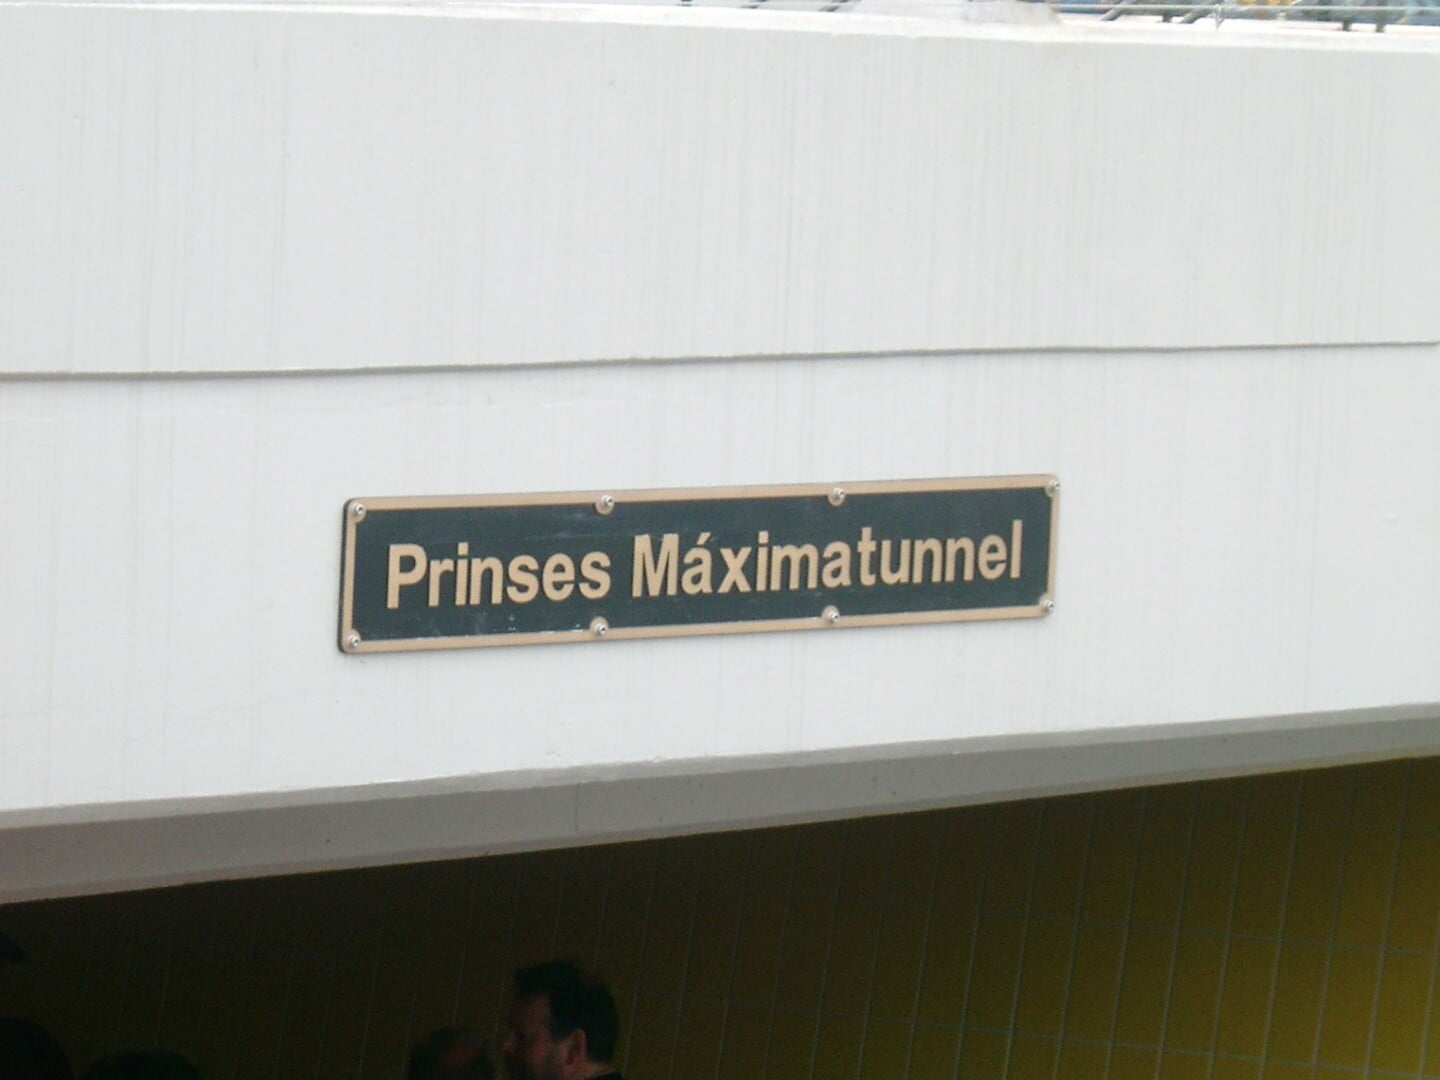 Naamplaat van de fietstunnel bij het NS-station.